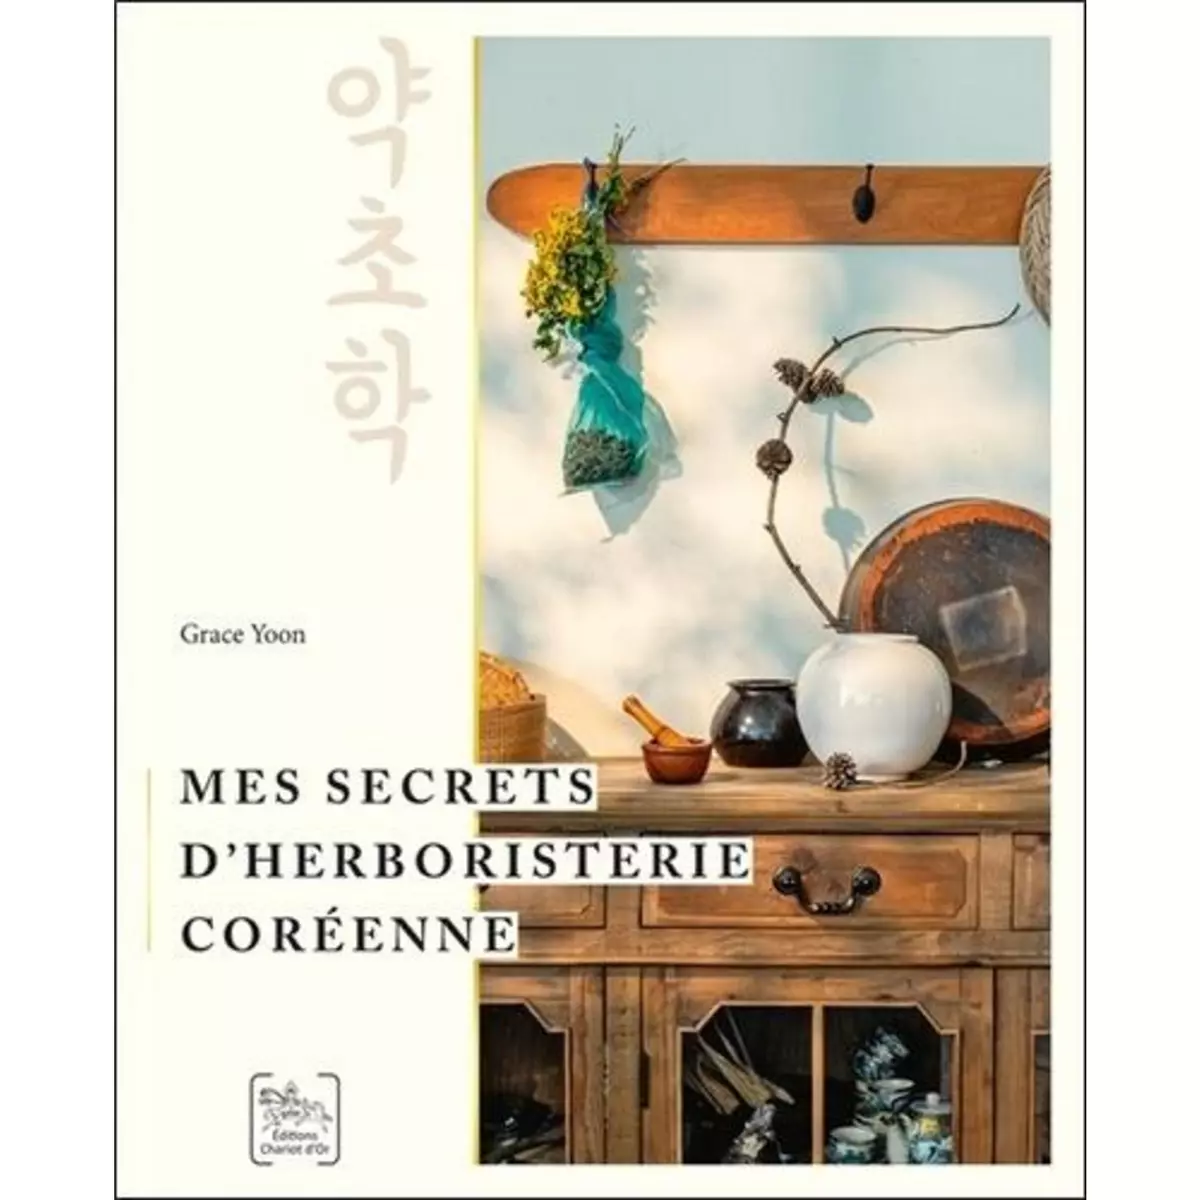  MES SECRETS D'HERBORISTERIE COREENNE, Yoon Grace